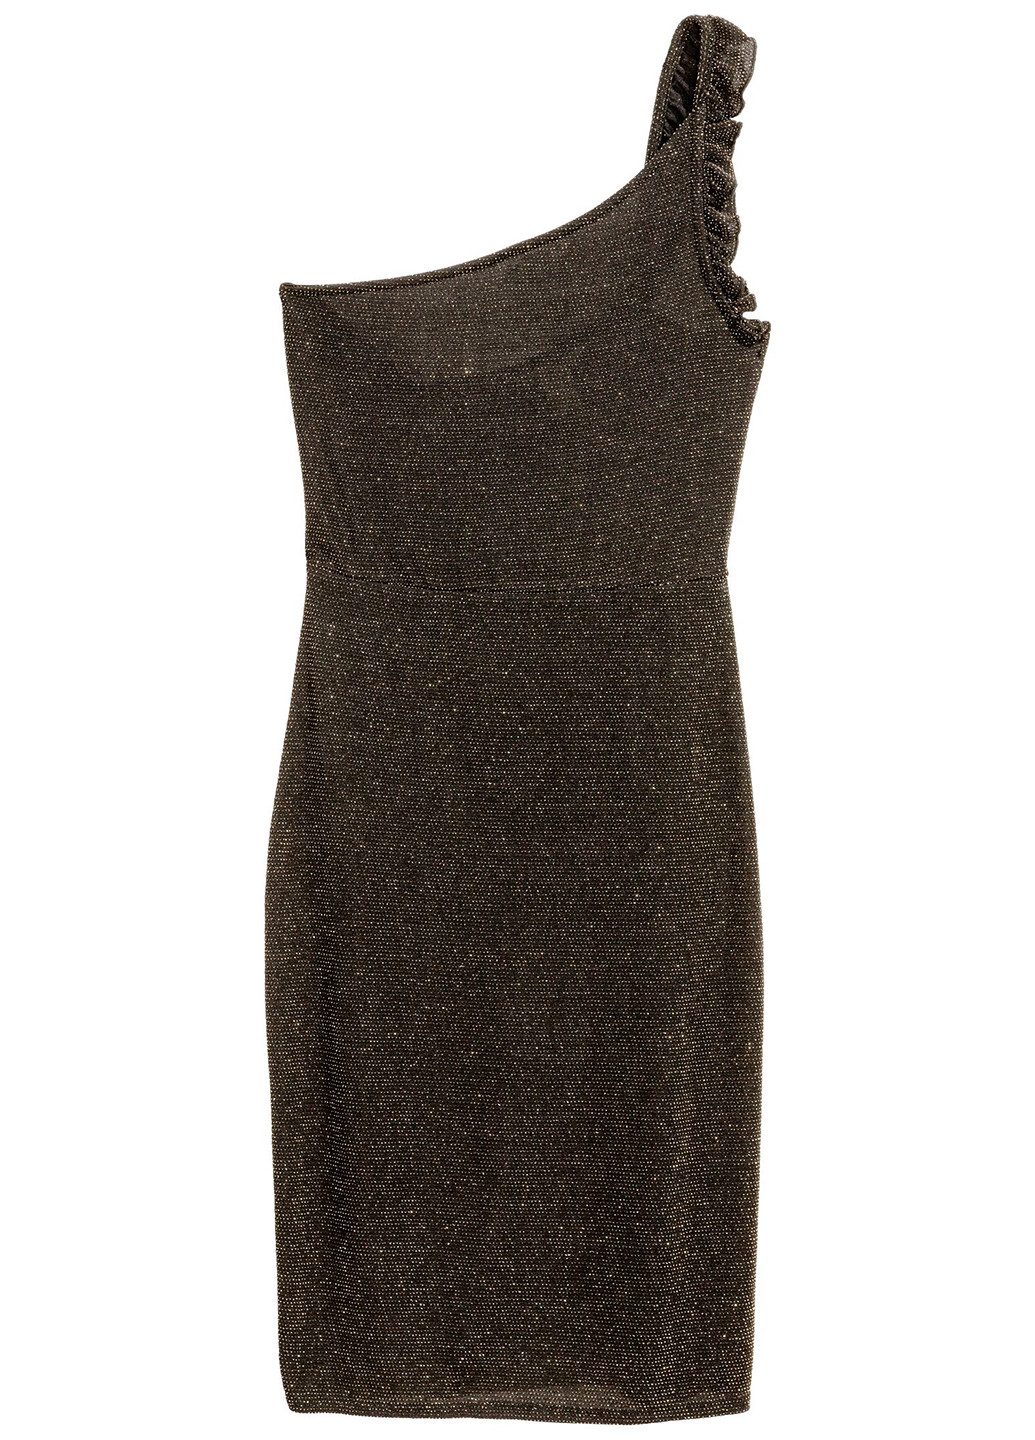 Черное коктейльное платье на одно плечо H&M меланжевое